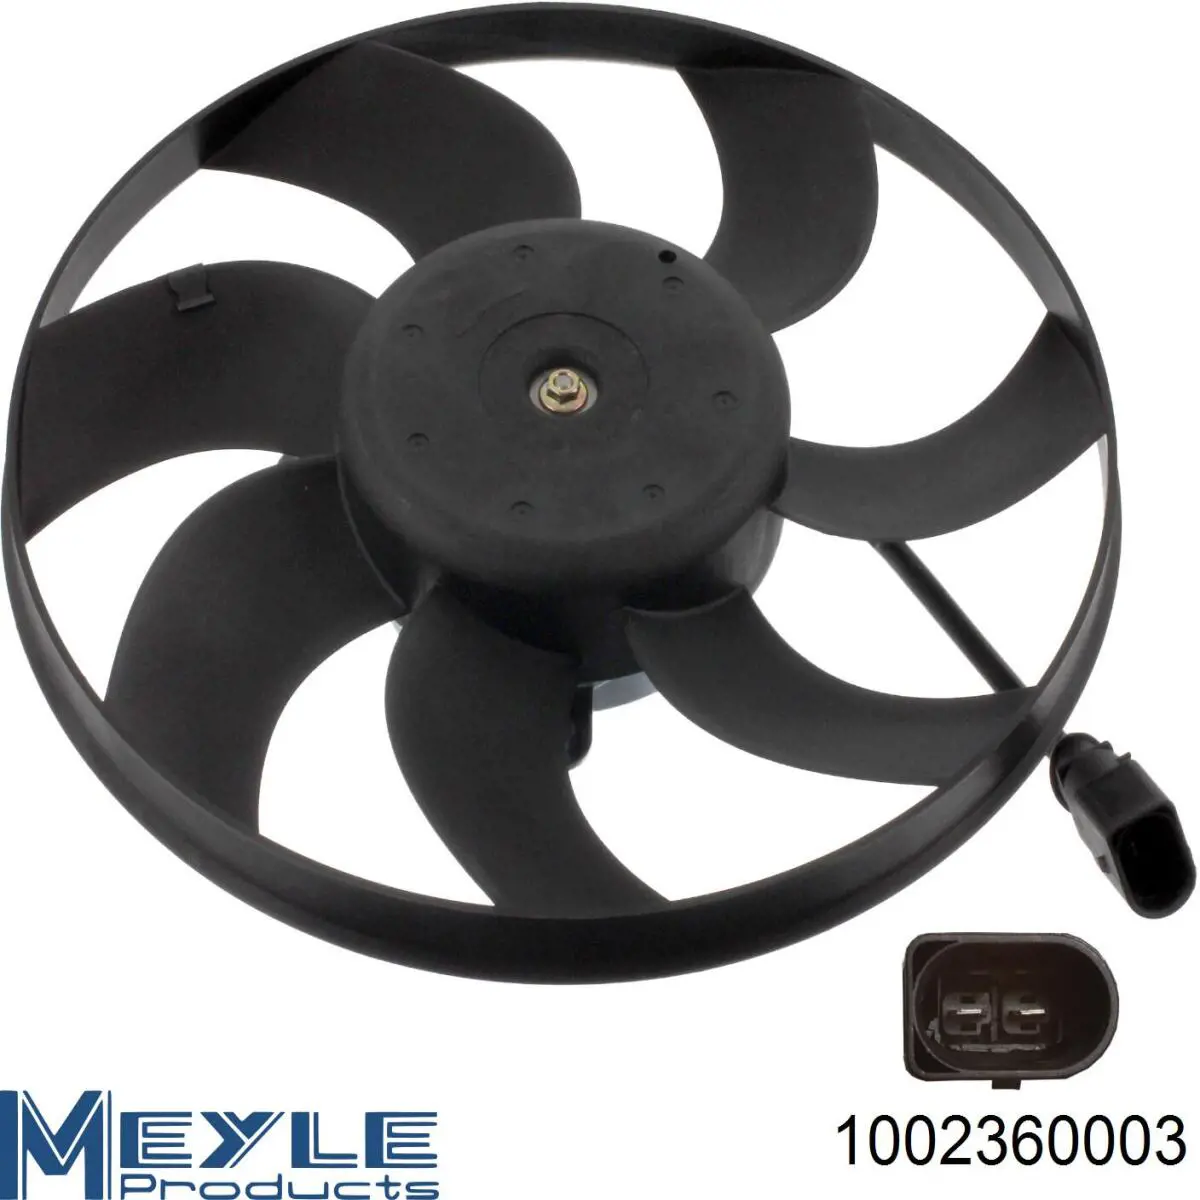 1002360003 Meyle ventilador (rodete +motor refrigeración del motor con electromotor derecho)